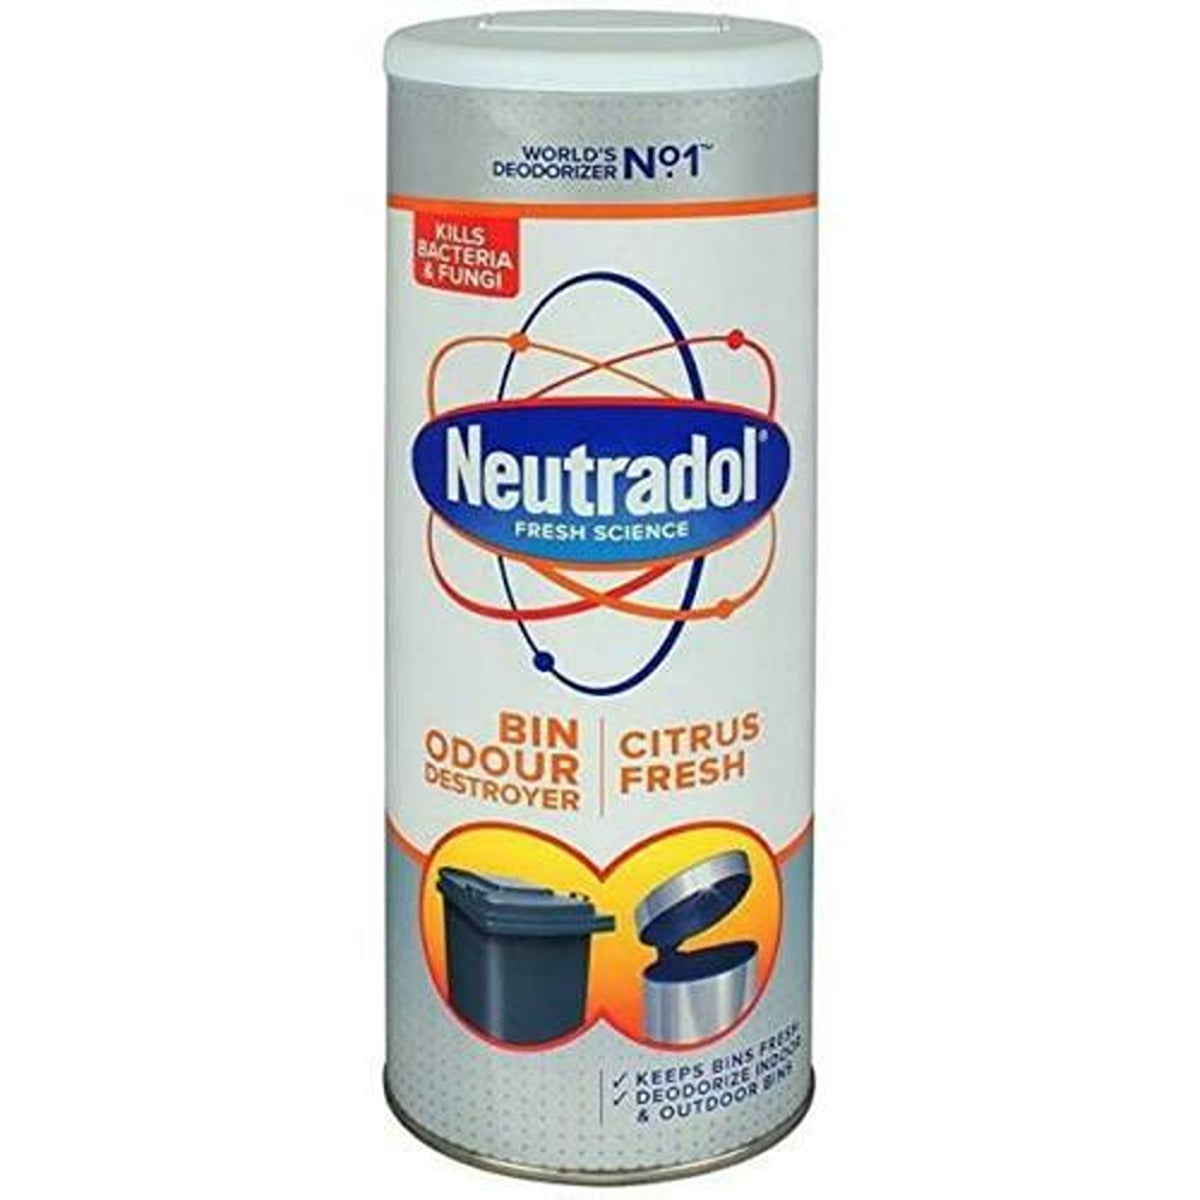 A can of Neutradol - Dustbin Odour Destroyer - 350ml Neutradol bin citrus fresh.